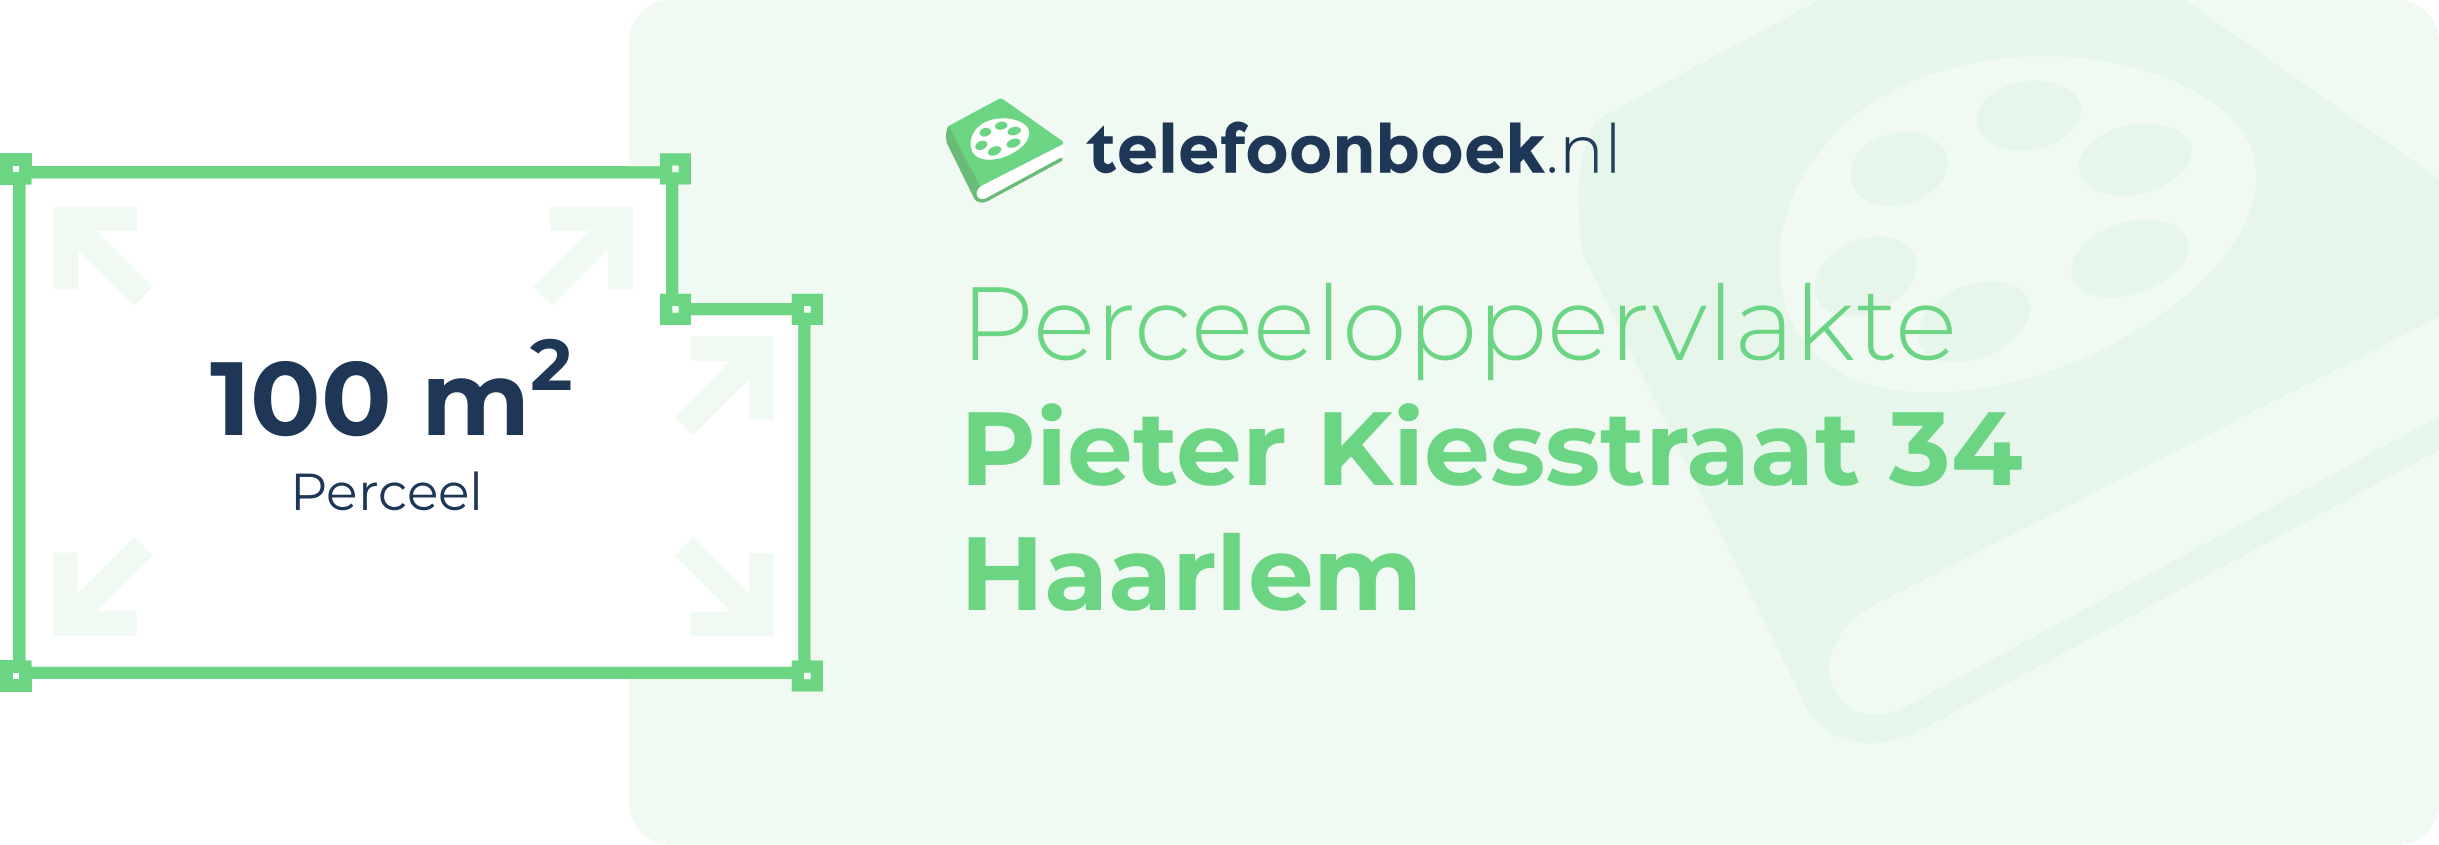 Perceeloppervlakte Pieter Kiesstraat 34 Haarlem